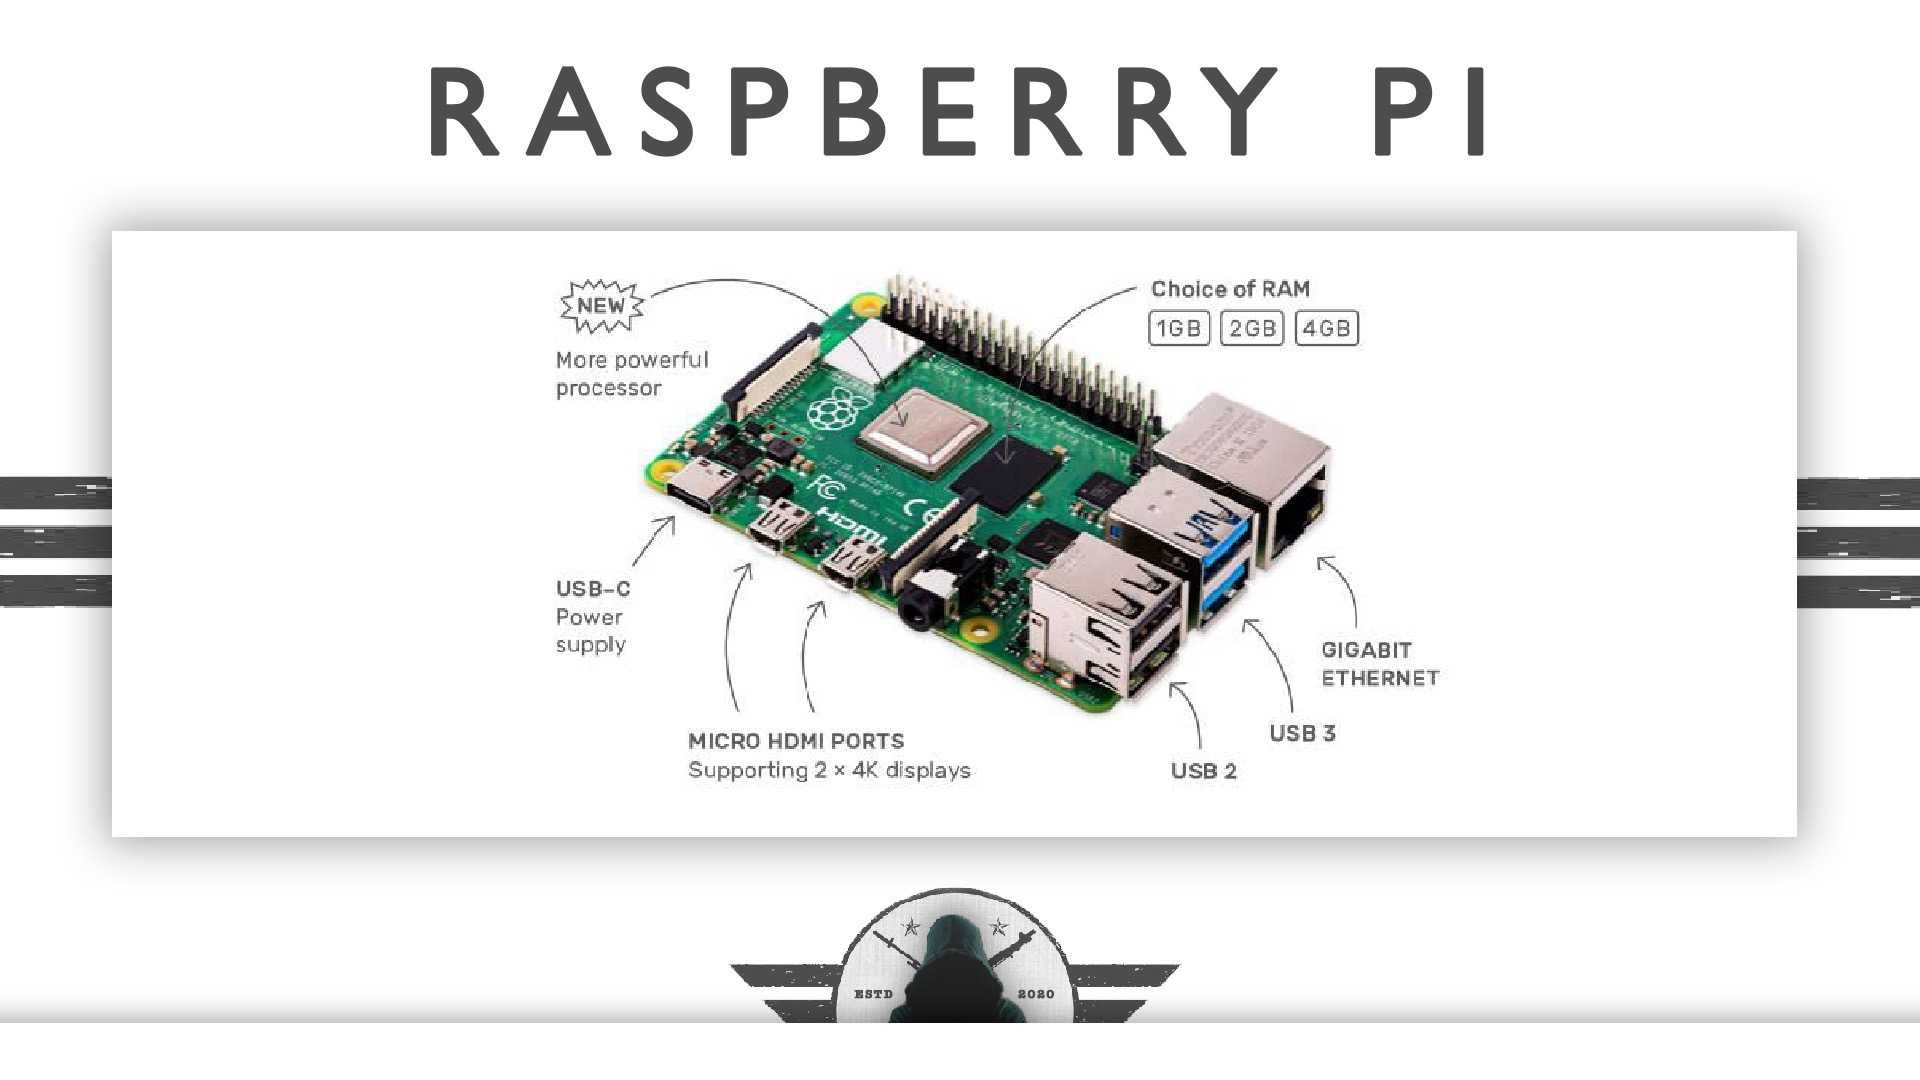 Raspberry pi pico на мк rp2040: начало и первые шаги. что есть поесть за $4